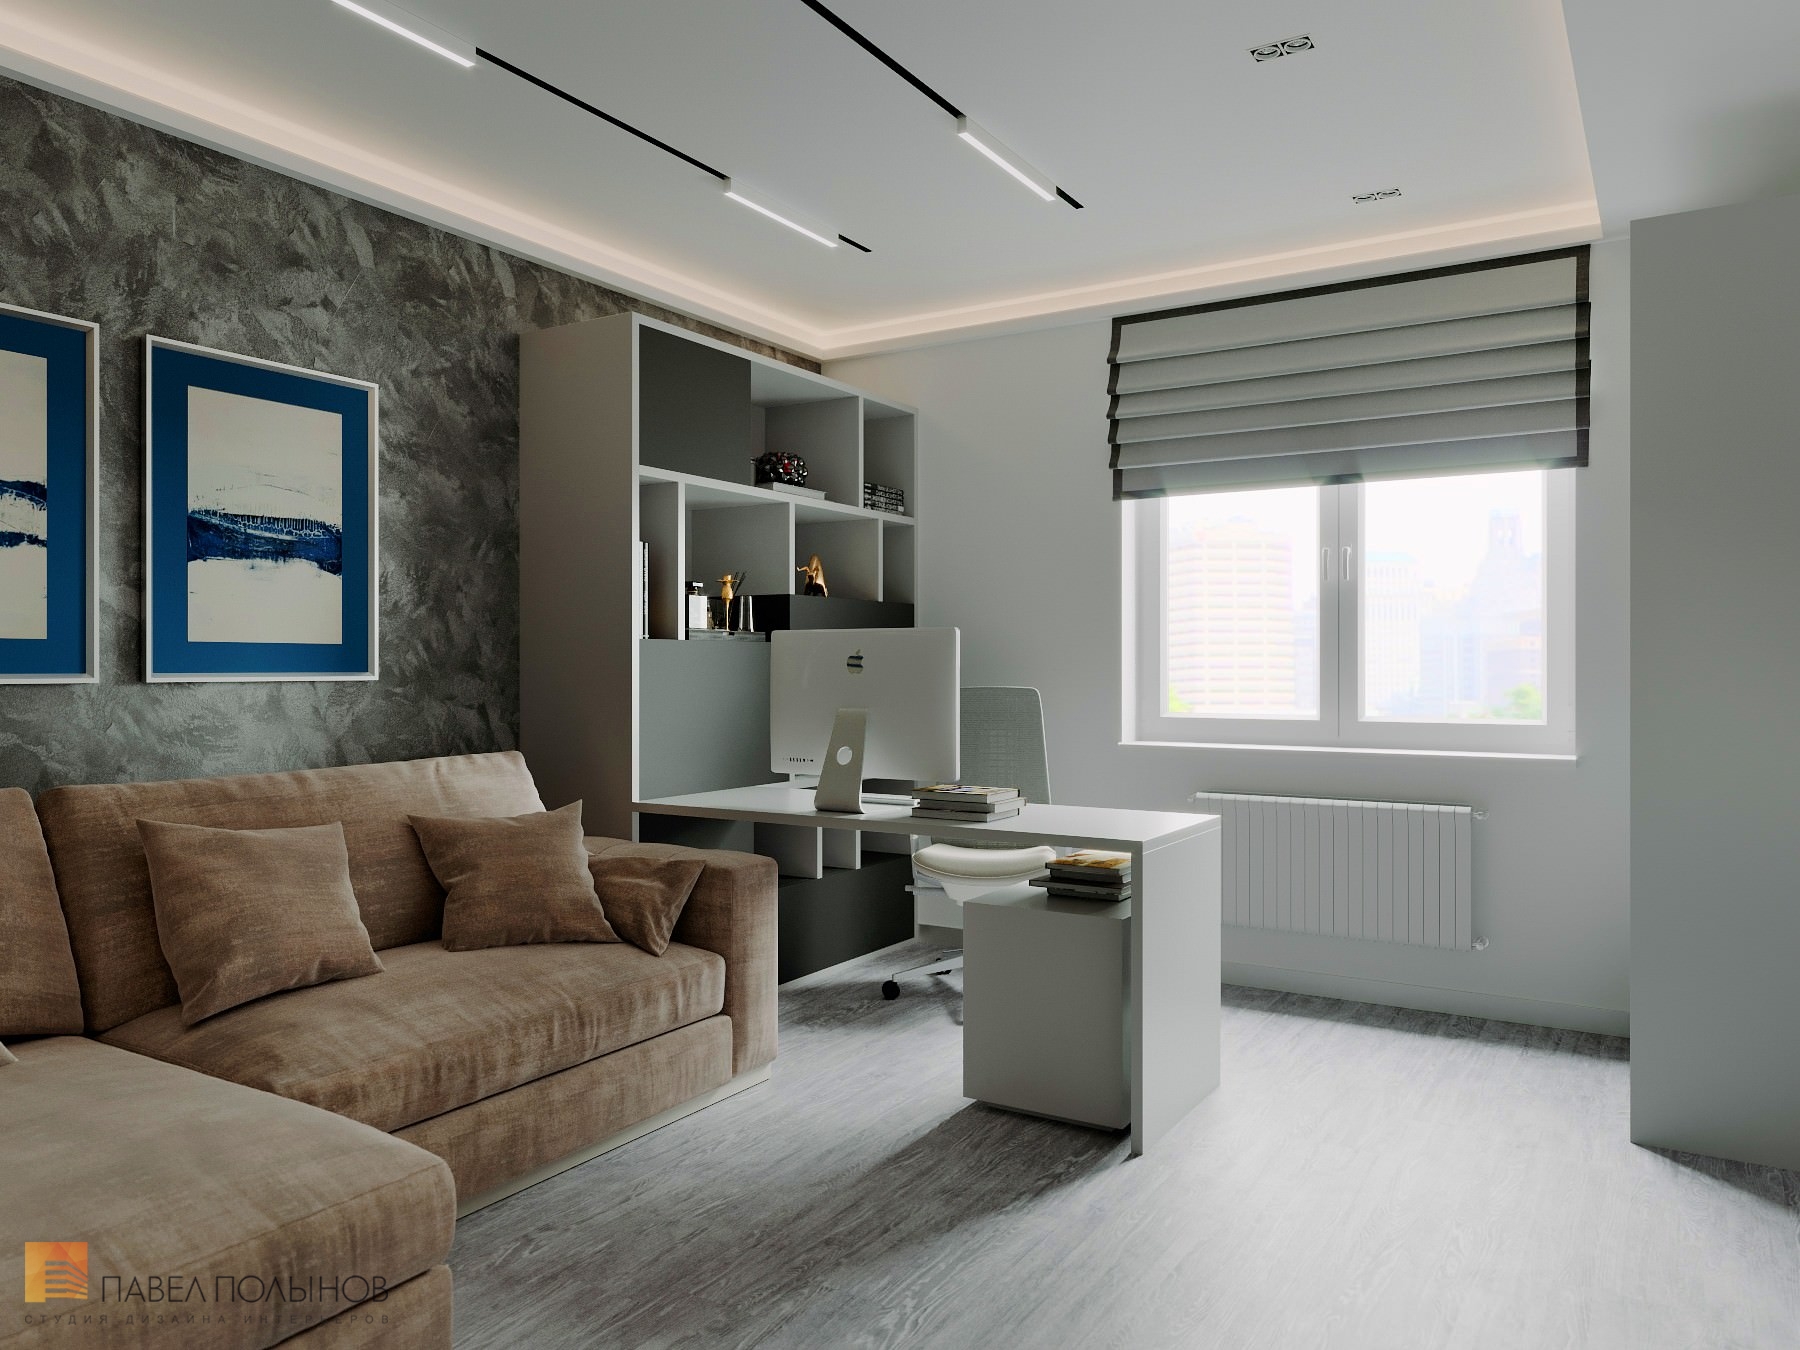 Фото домашний кабинет из проекта «Дизайн интерьер квартиры в ЖК «Кремлевские звезды», современный стиль, 133 кв.м.»